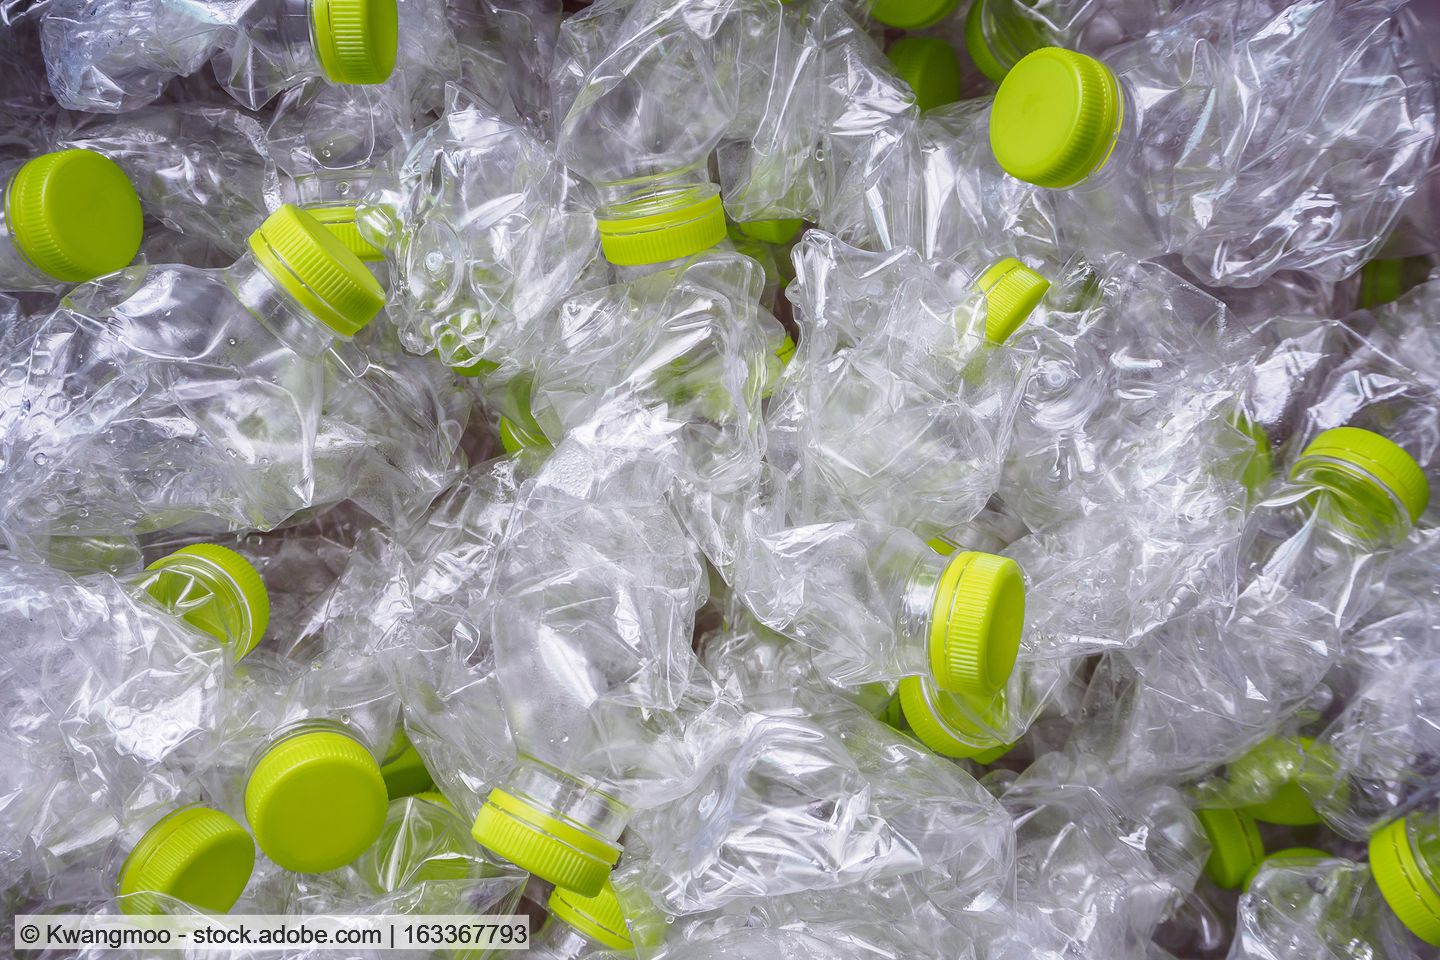 Biffa investiert weiter in Kunststoffrecycling